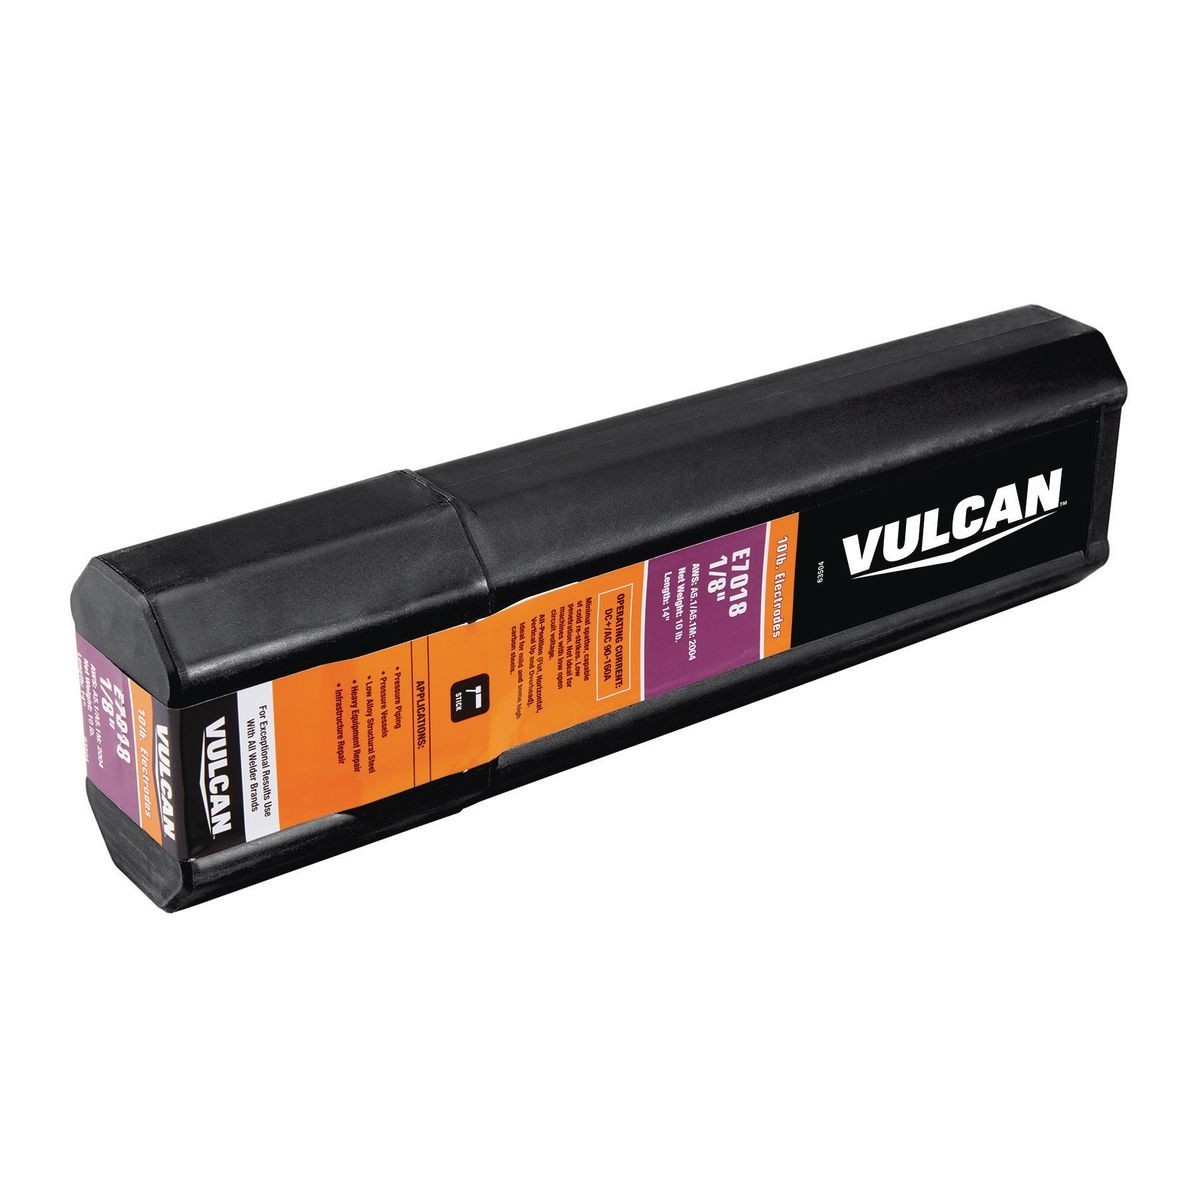 VULCAN 1/8 in. AWS E7018 Welding Electrode 10.00 lb. - Item 63504